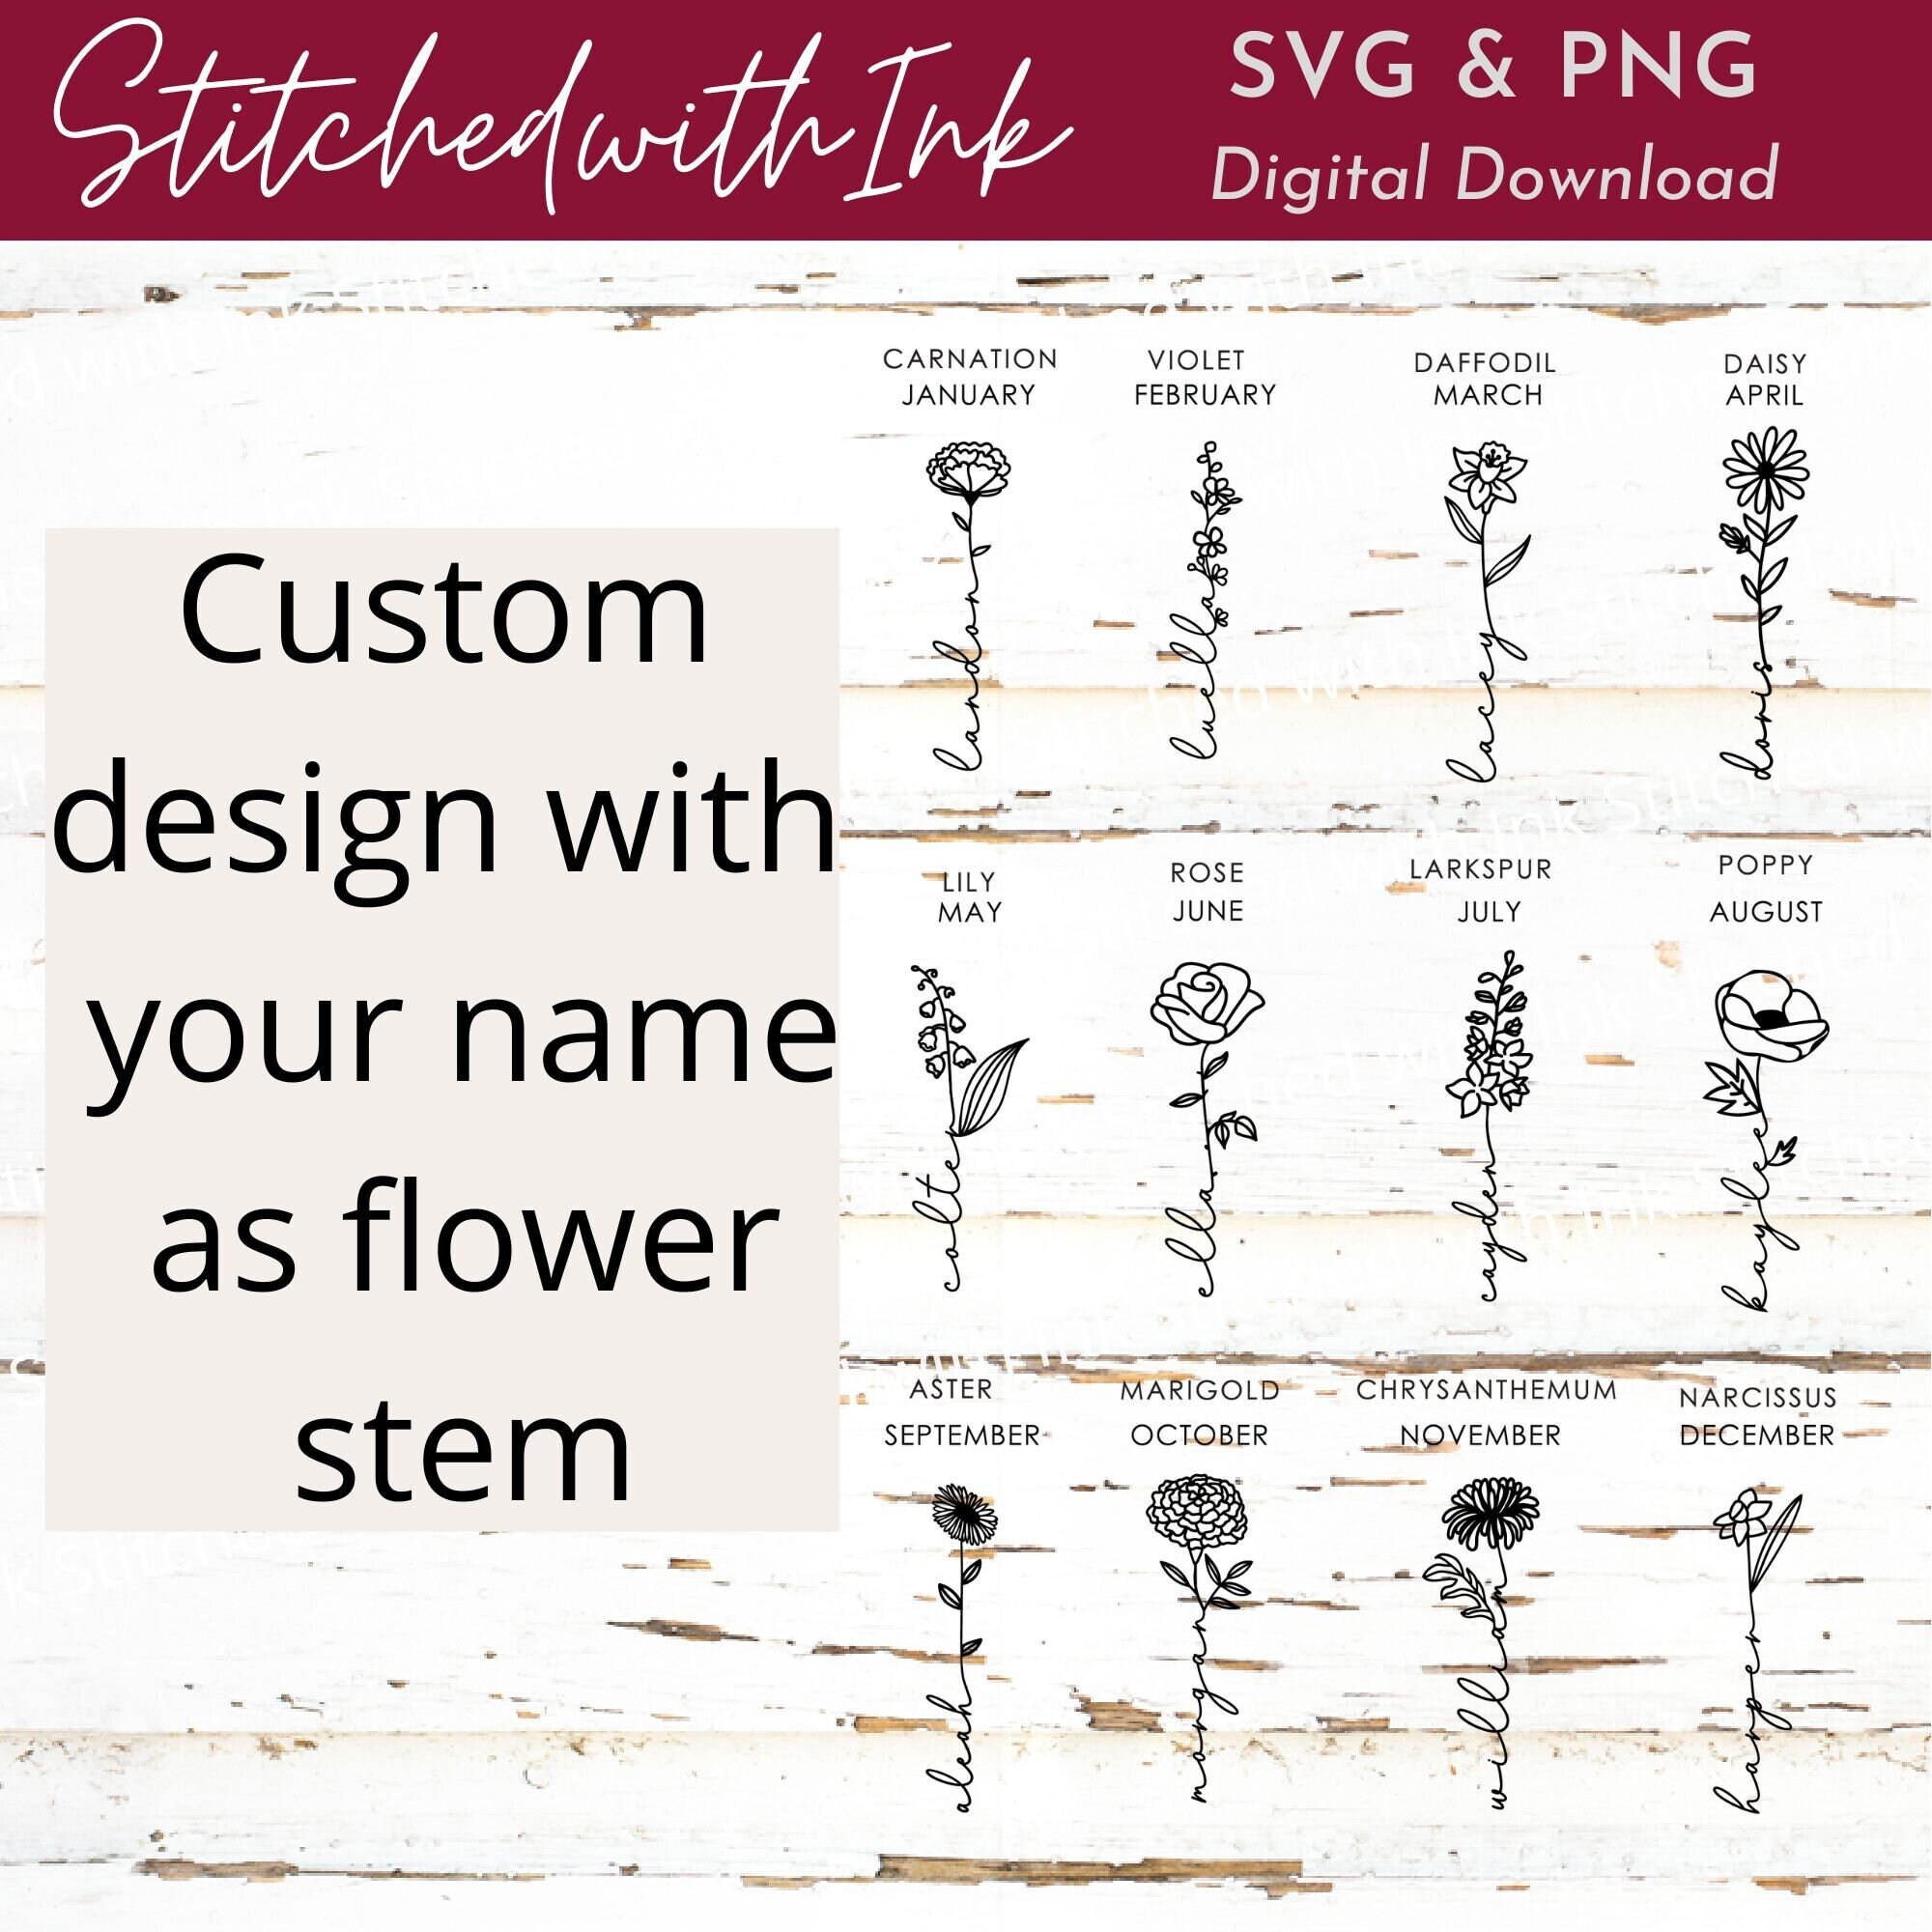 Flower Stem SVG PNG JPG Flower Stem Sublimation Bundle of 2 Flower